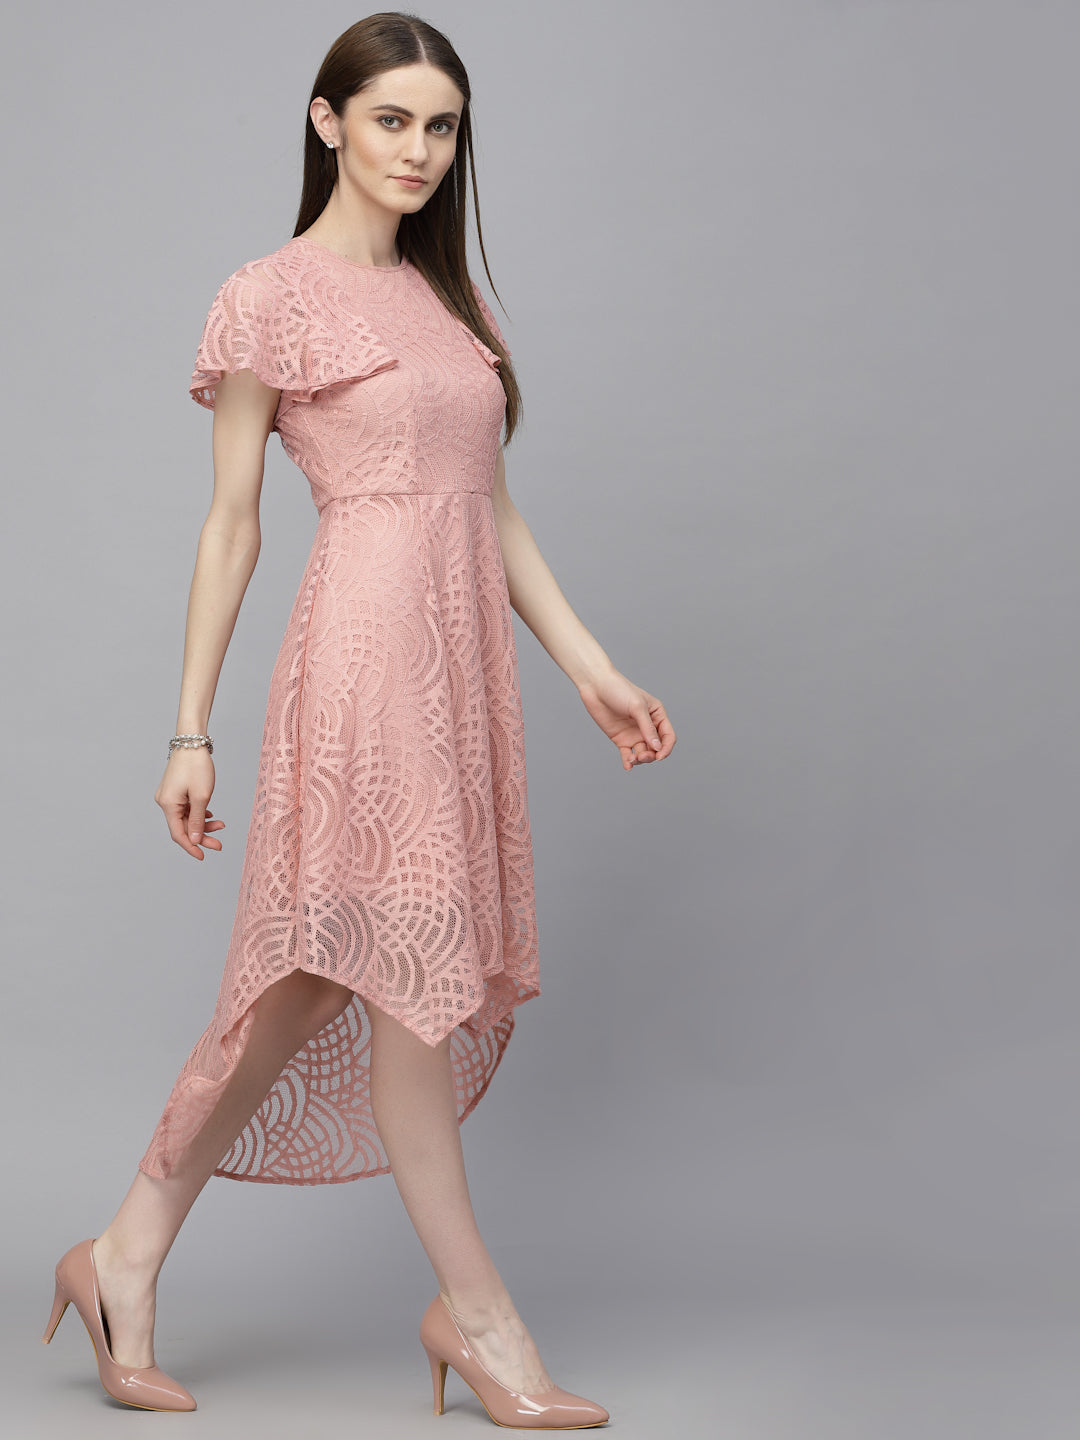 Gipsy Dusky Pink Net Fabric Dress